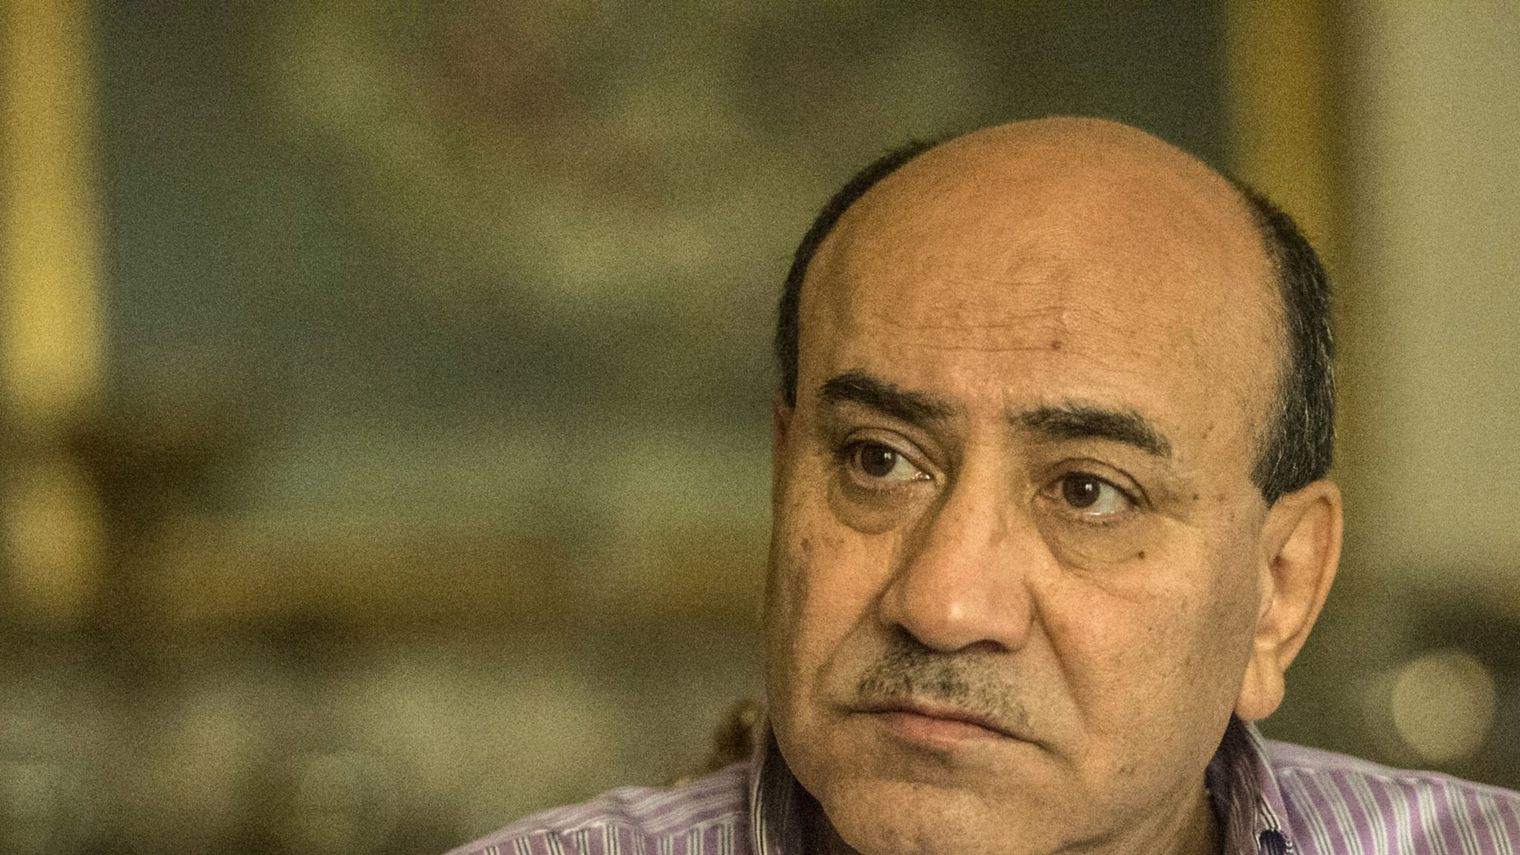 Arrestation d’un proche collaborateur d’un ex-candidat à la présidence en Egypte